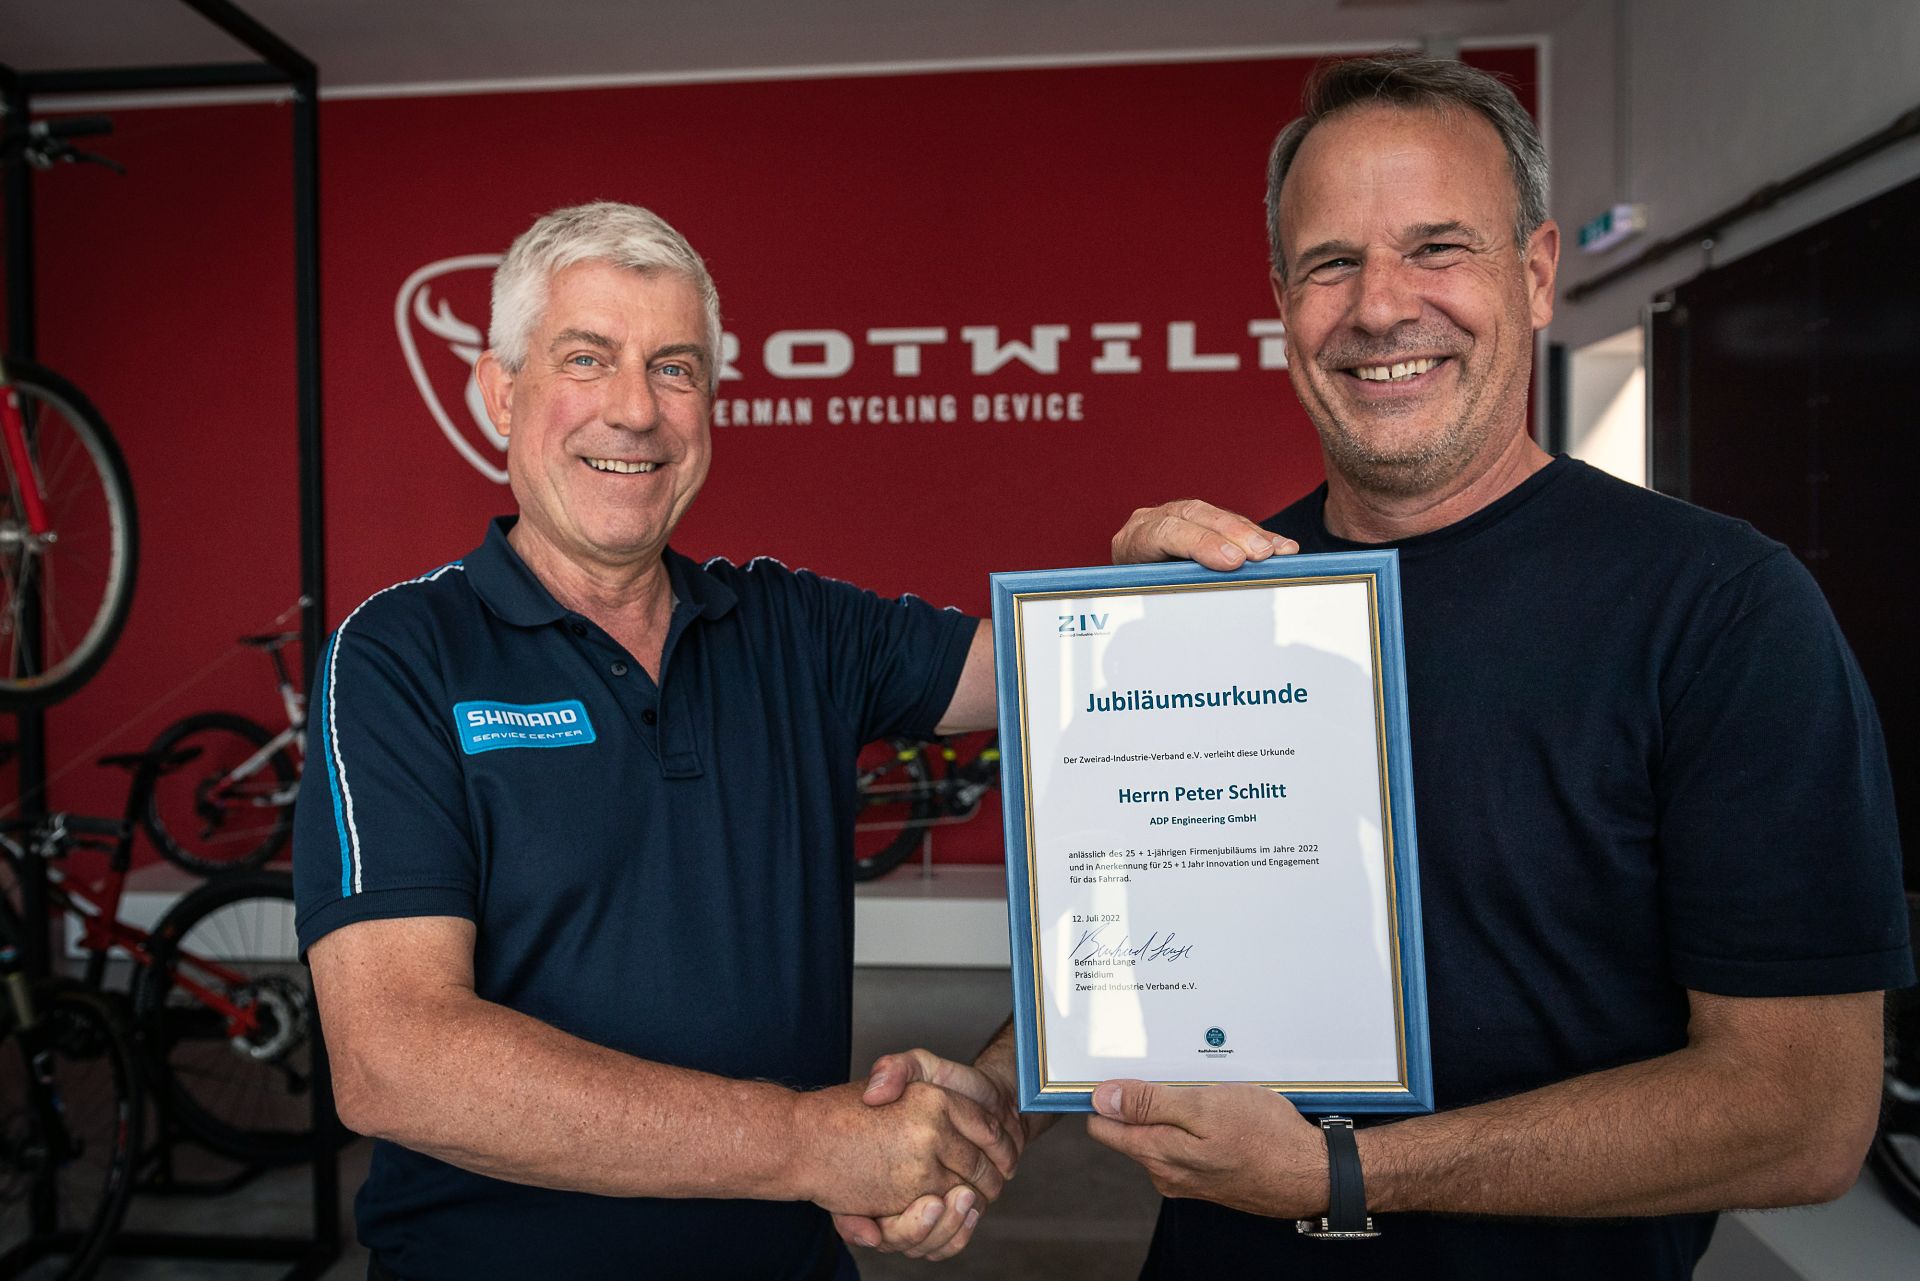 peter schlitt recibe certificado de reconocimiento de la ziv